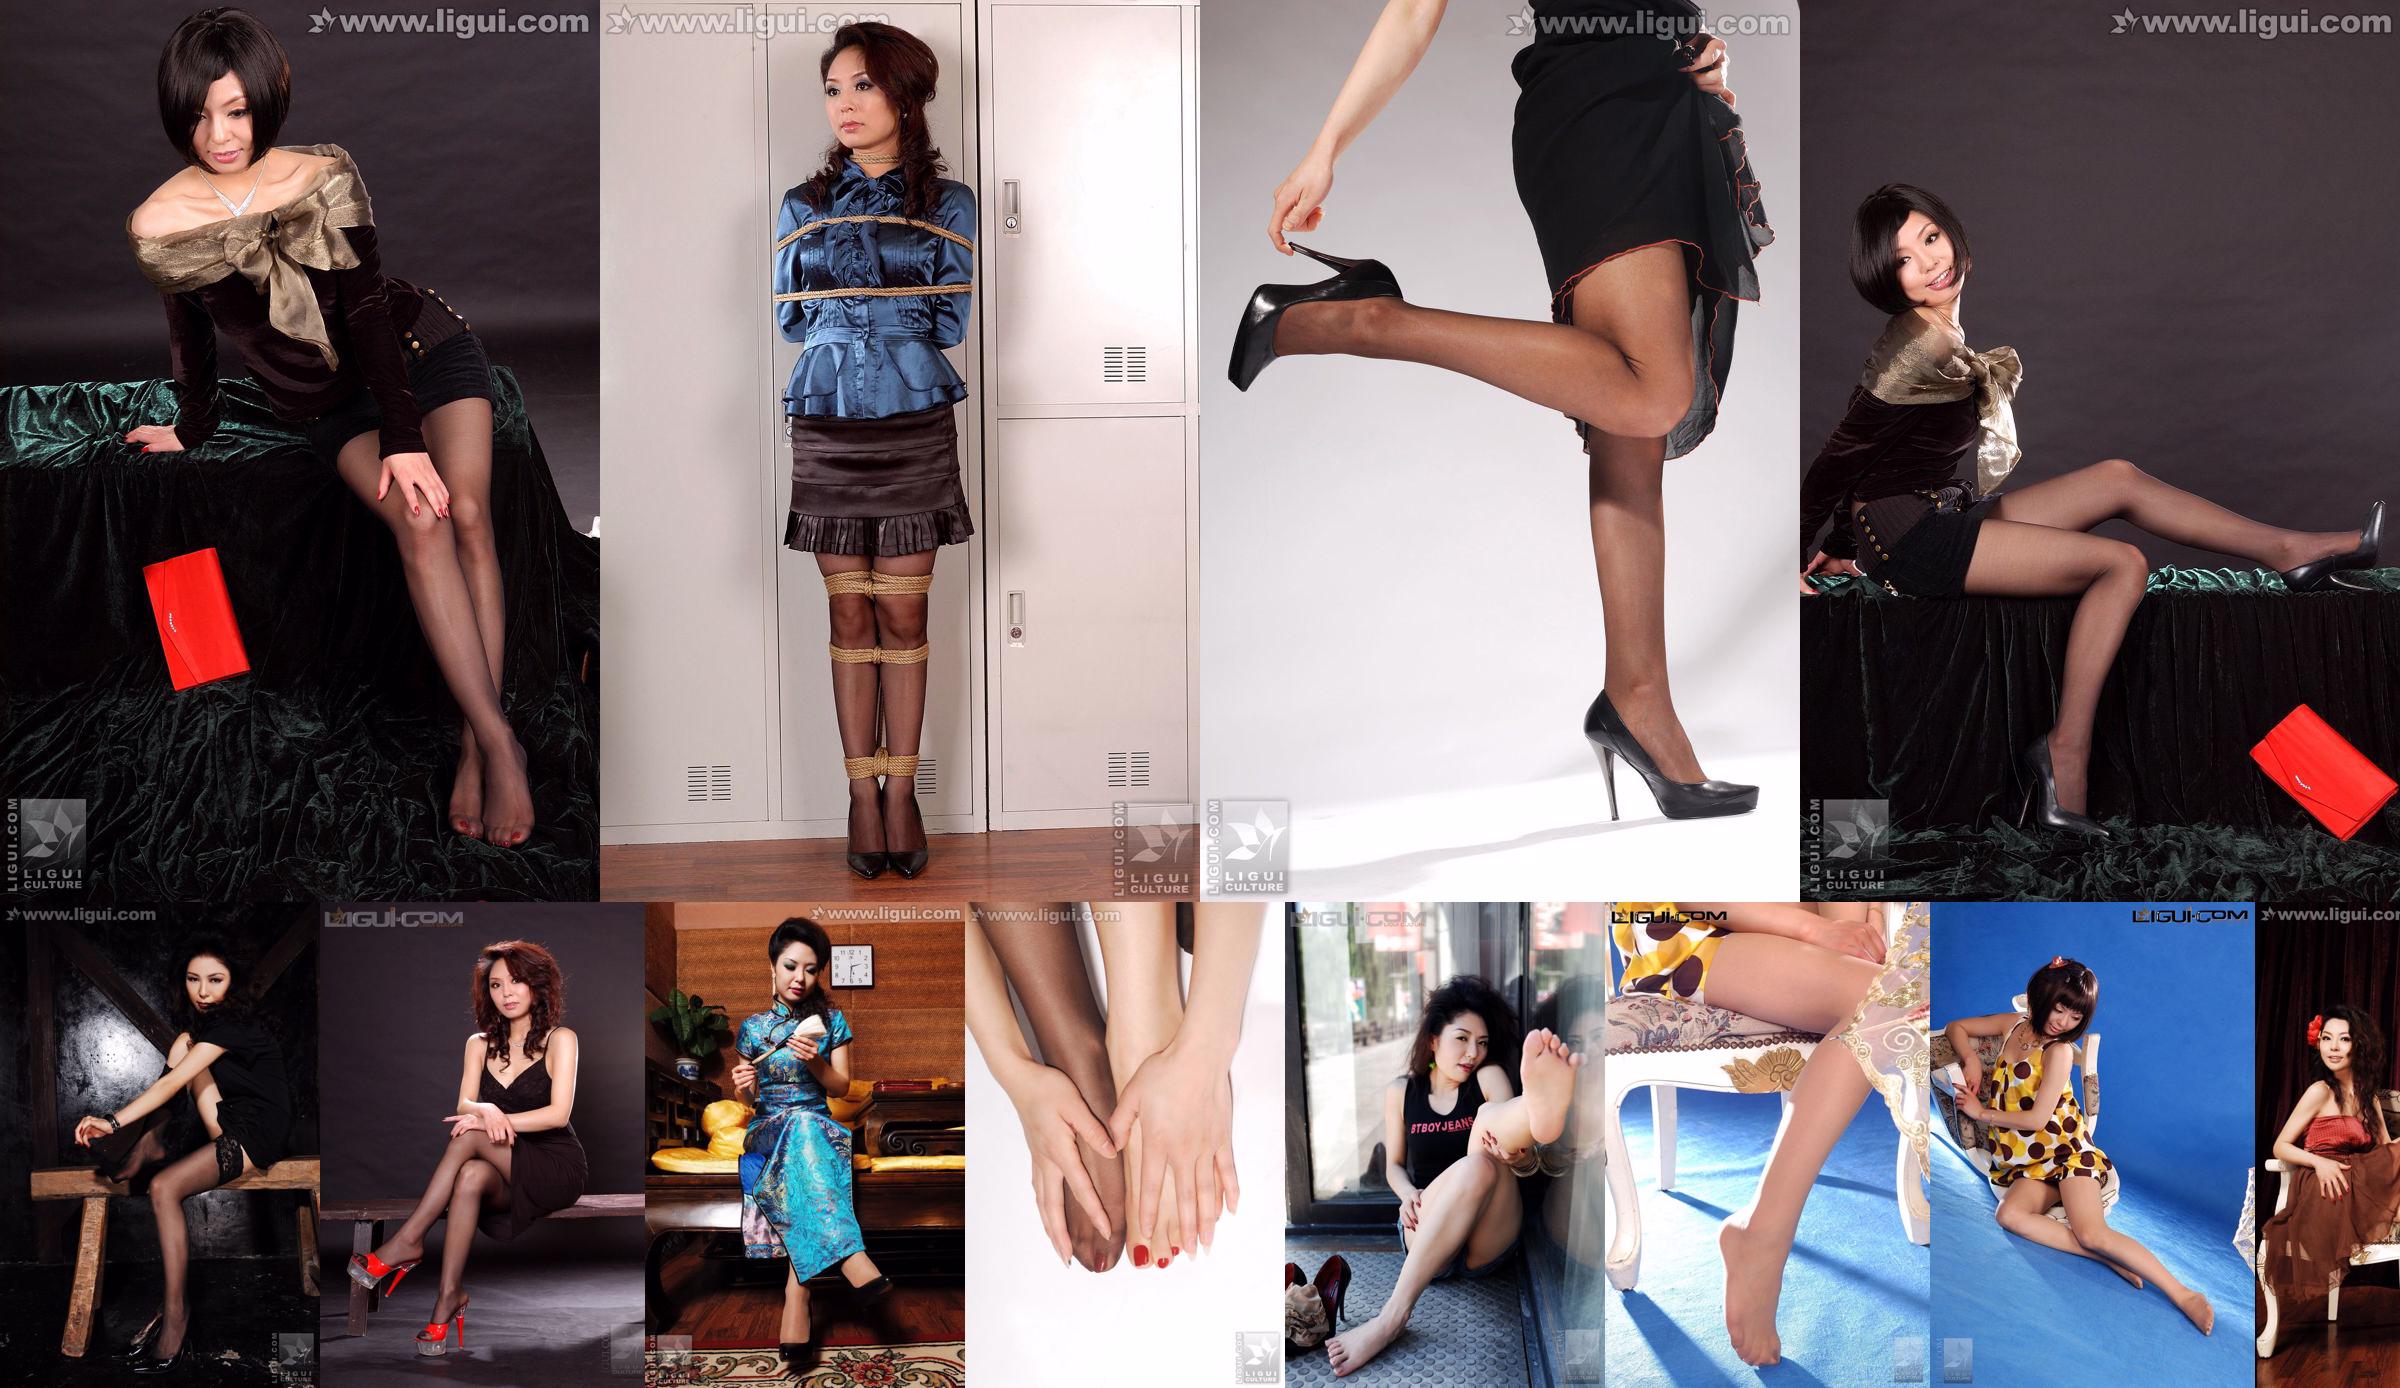 Người mẫu Bing Qing "Red Hot Mature Woman Bondage Collection" [Mitsuka 丽 柜 LiGui] Ảnh về tất và chân No.9f9ba7 Trang 1